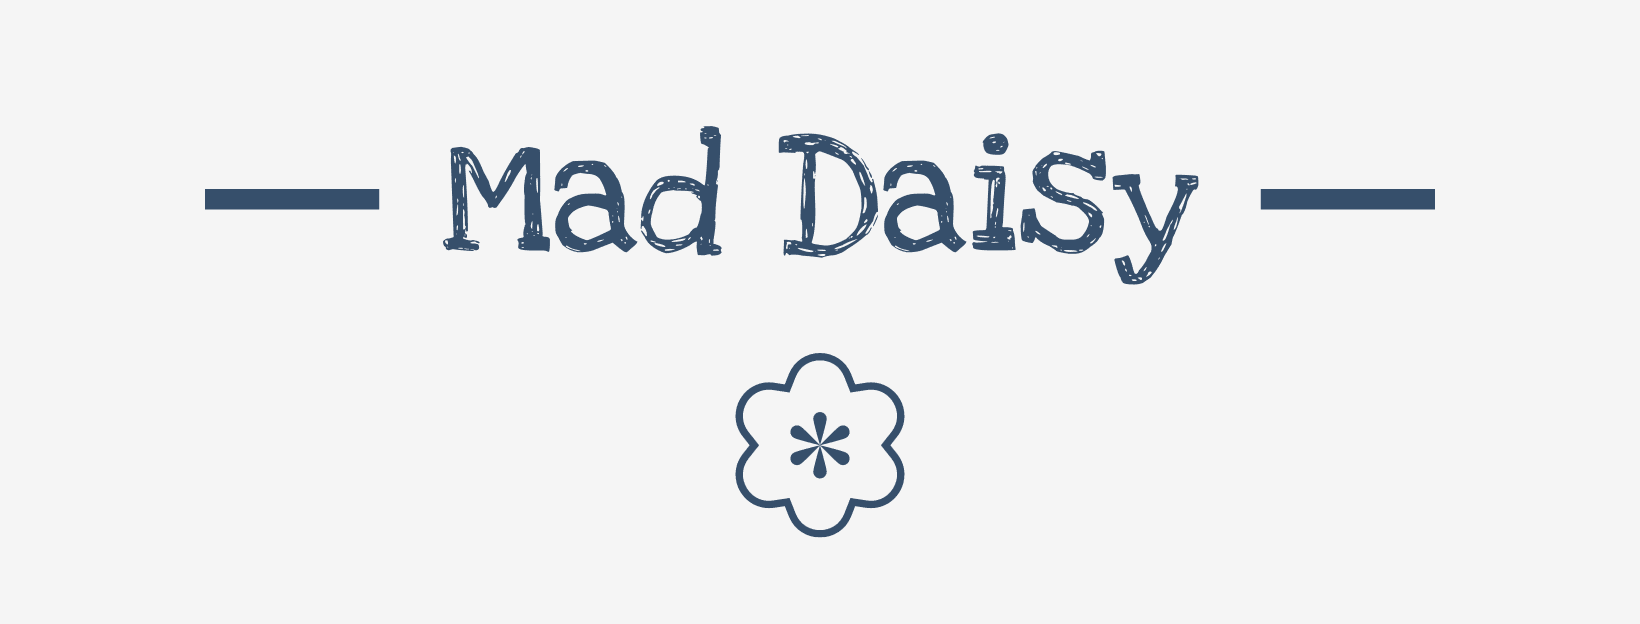 Mad Daisy